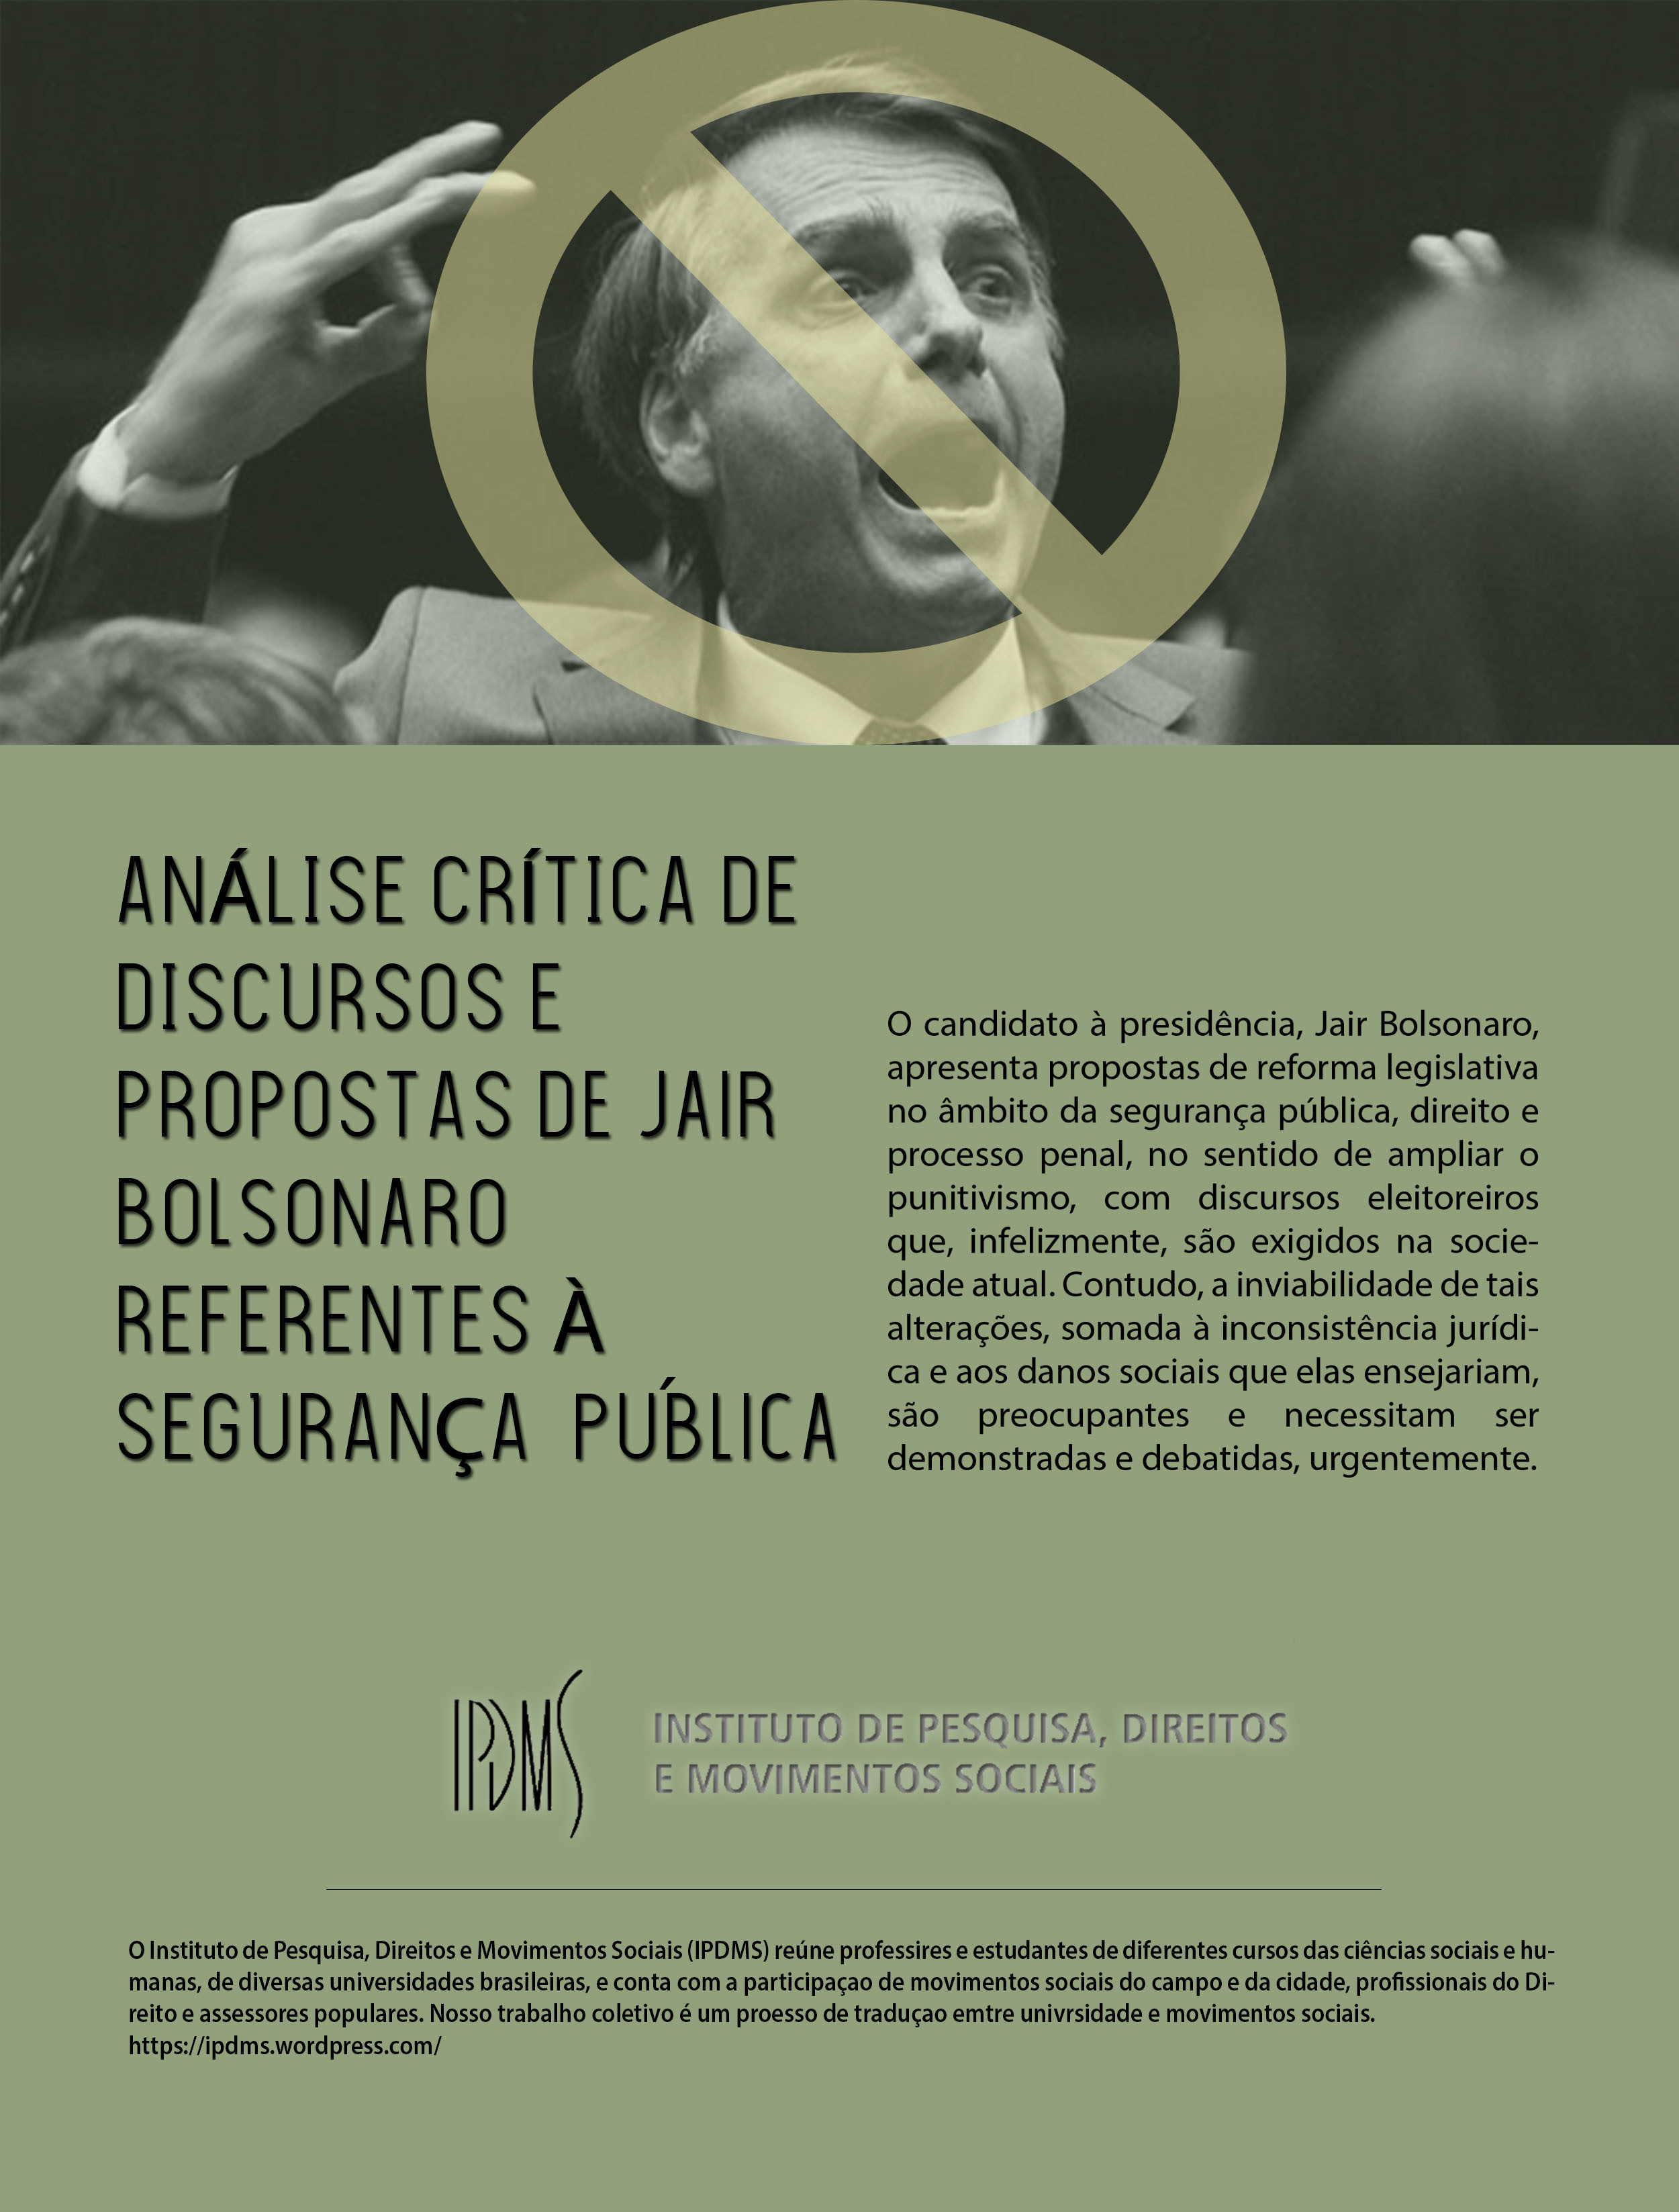 Análise crítica de discursos e proposta de Jair Bolsonaro referentes à segurança pública